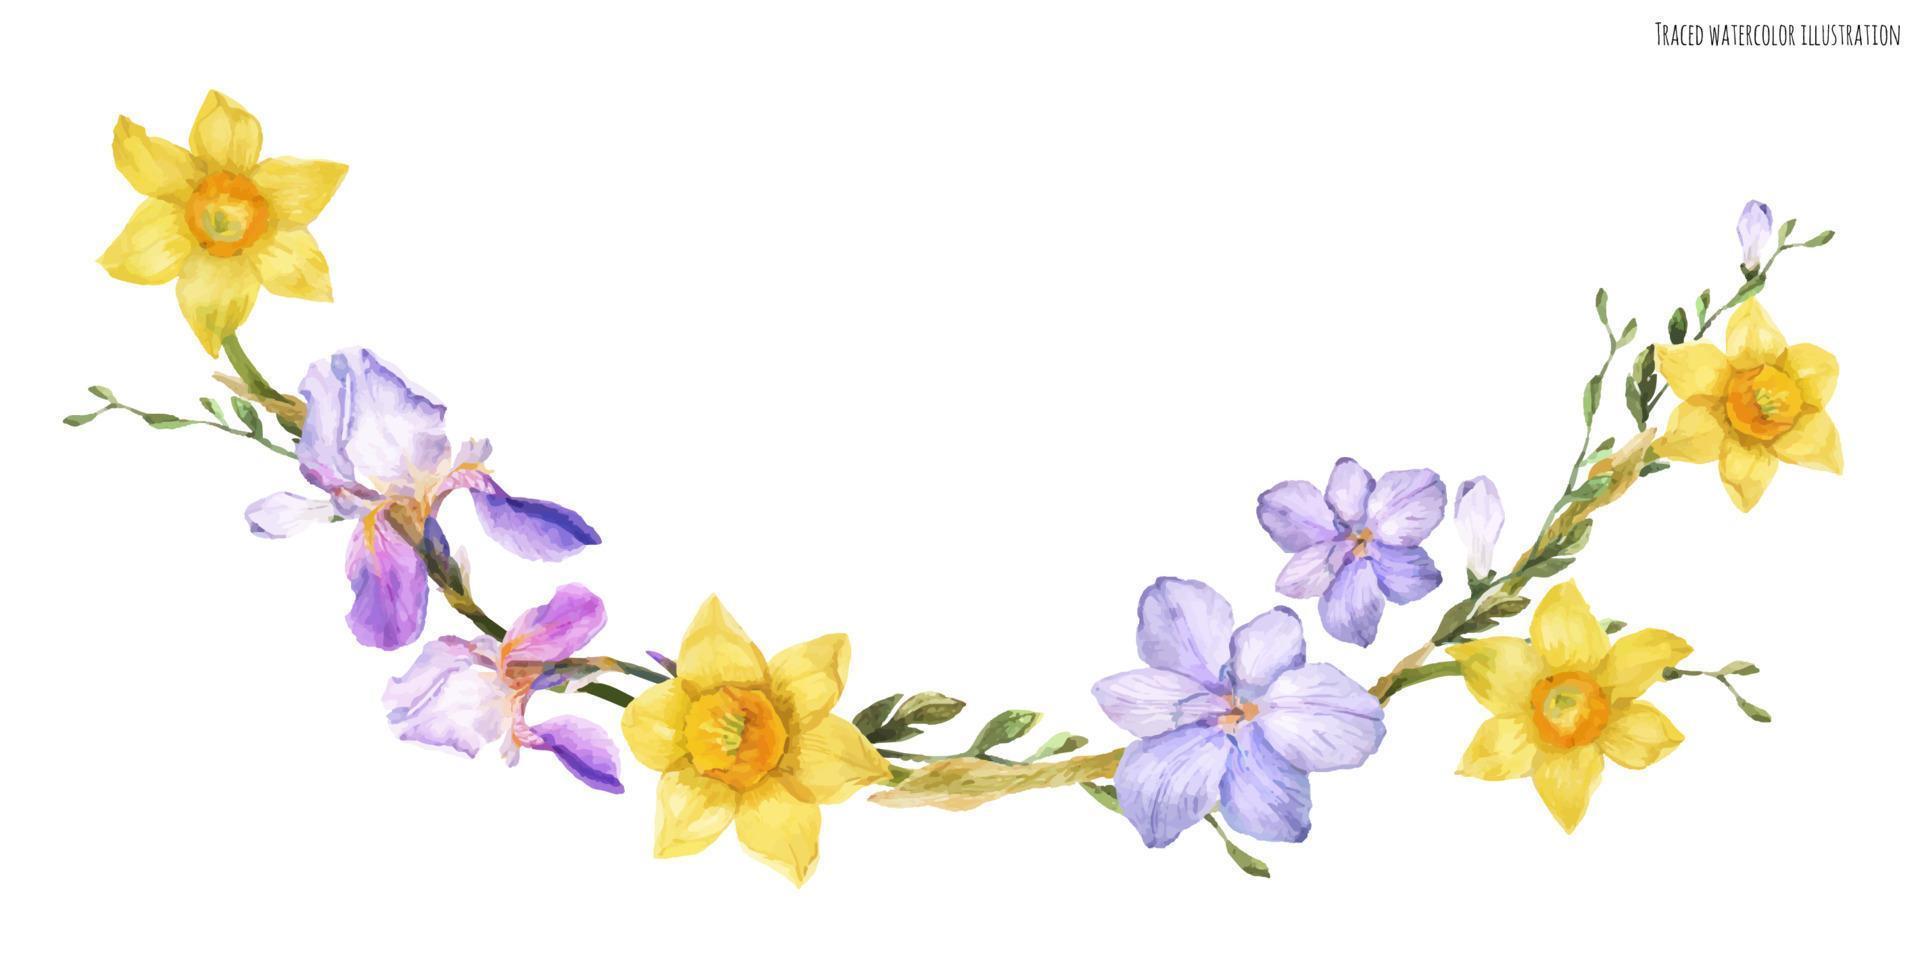 arco decorativo em aquarela com flores da primavera vetor